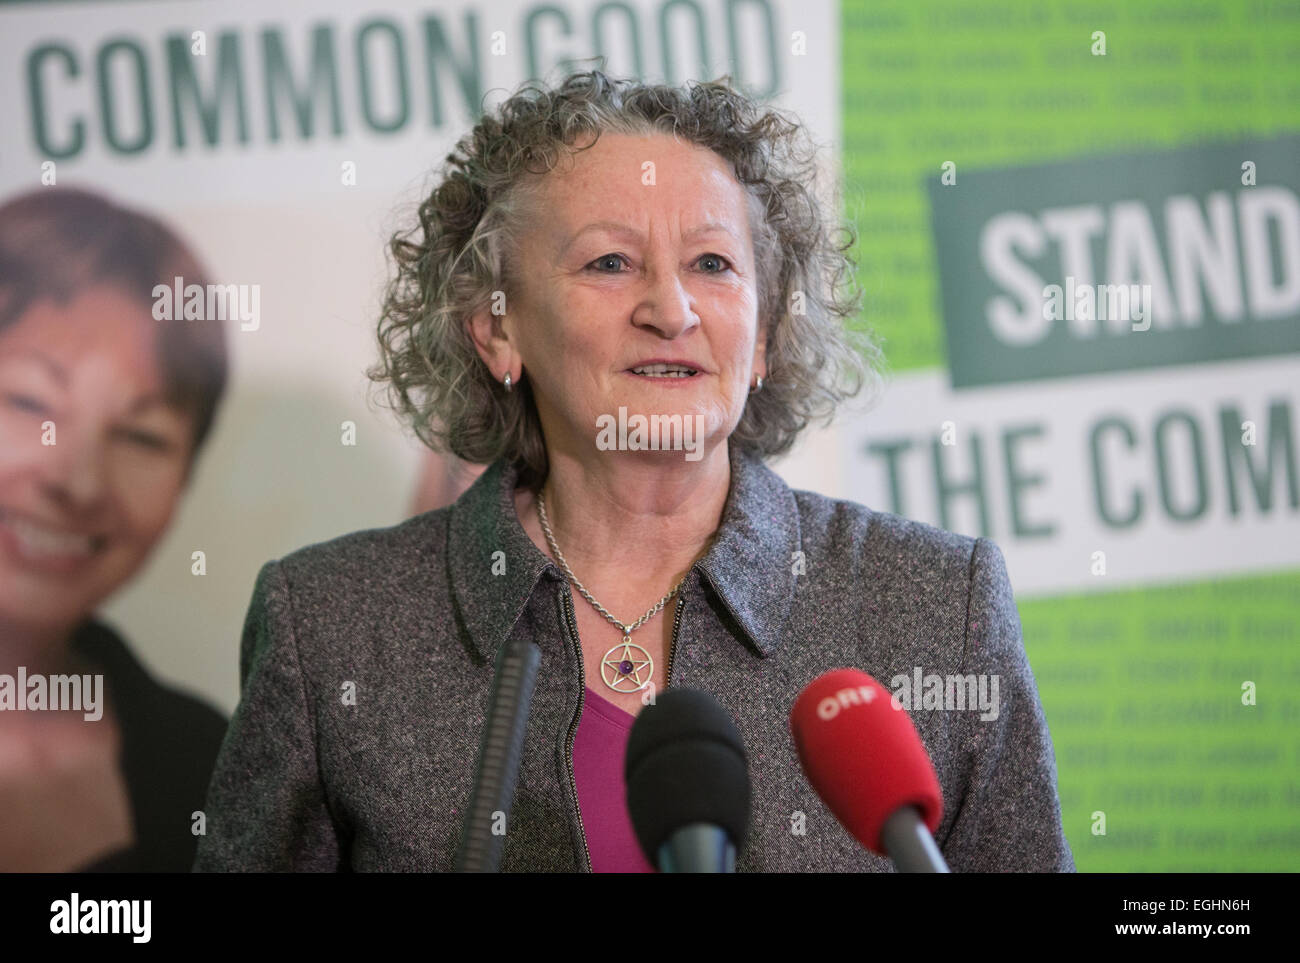 La baronesa Jenny Jones de Mouselcoomb hablando en el lanzamiento de la campaña electoral del partido verde Foto de stock